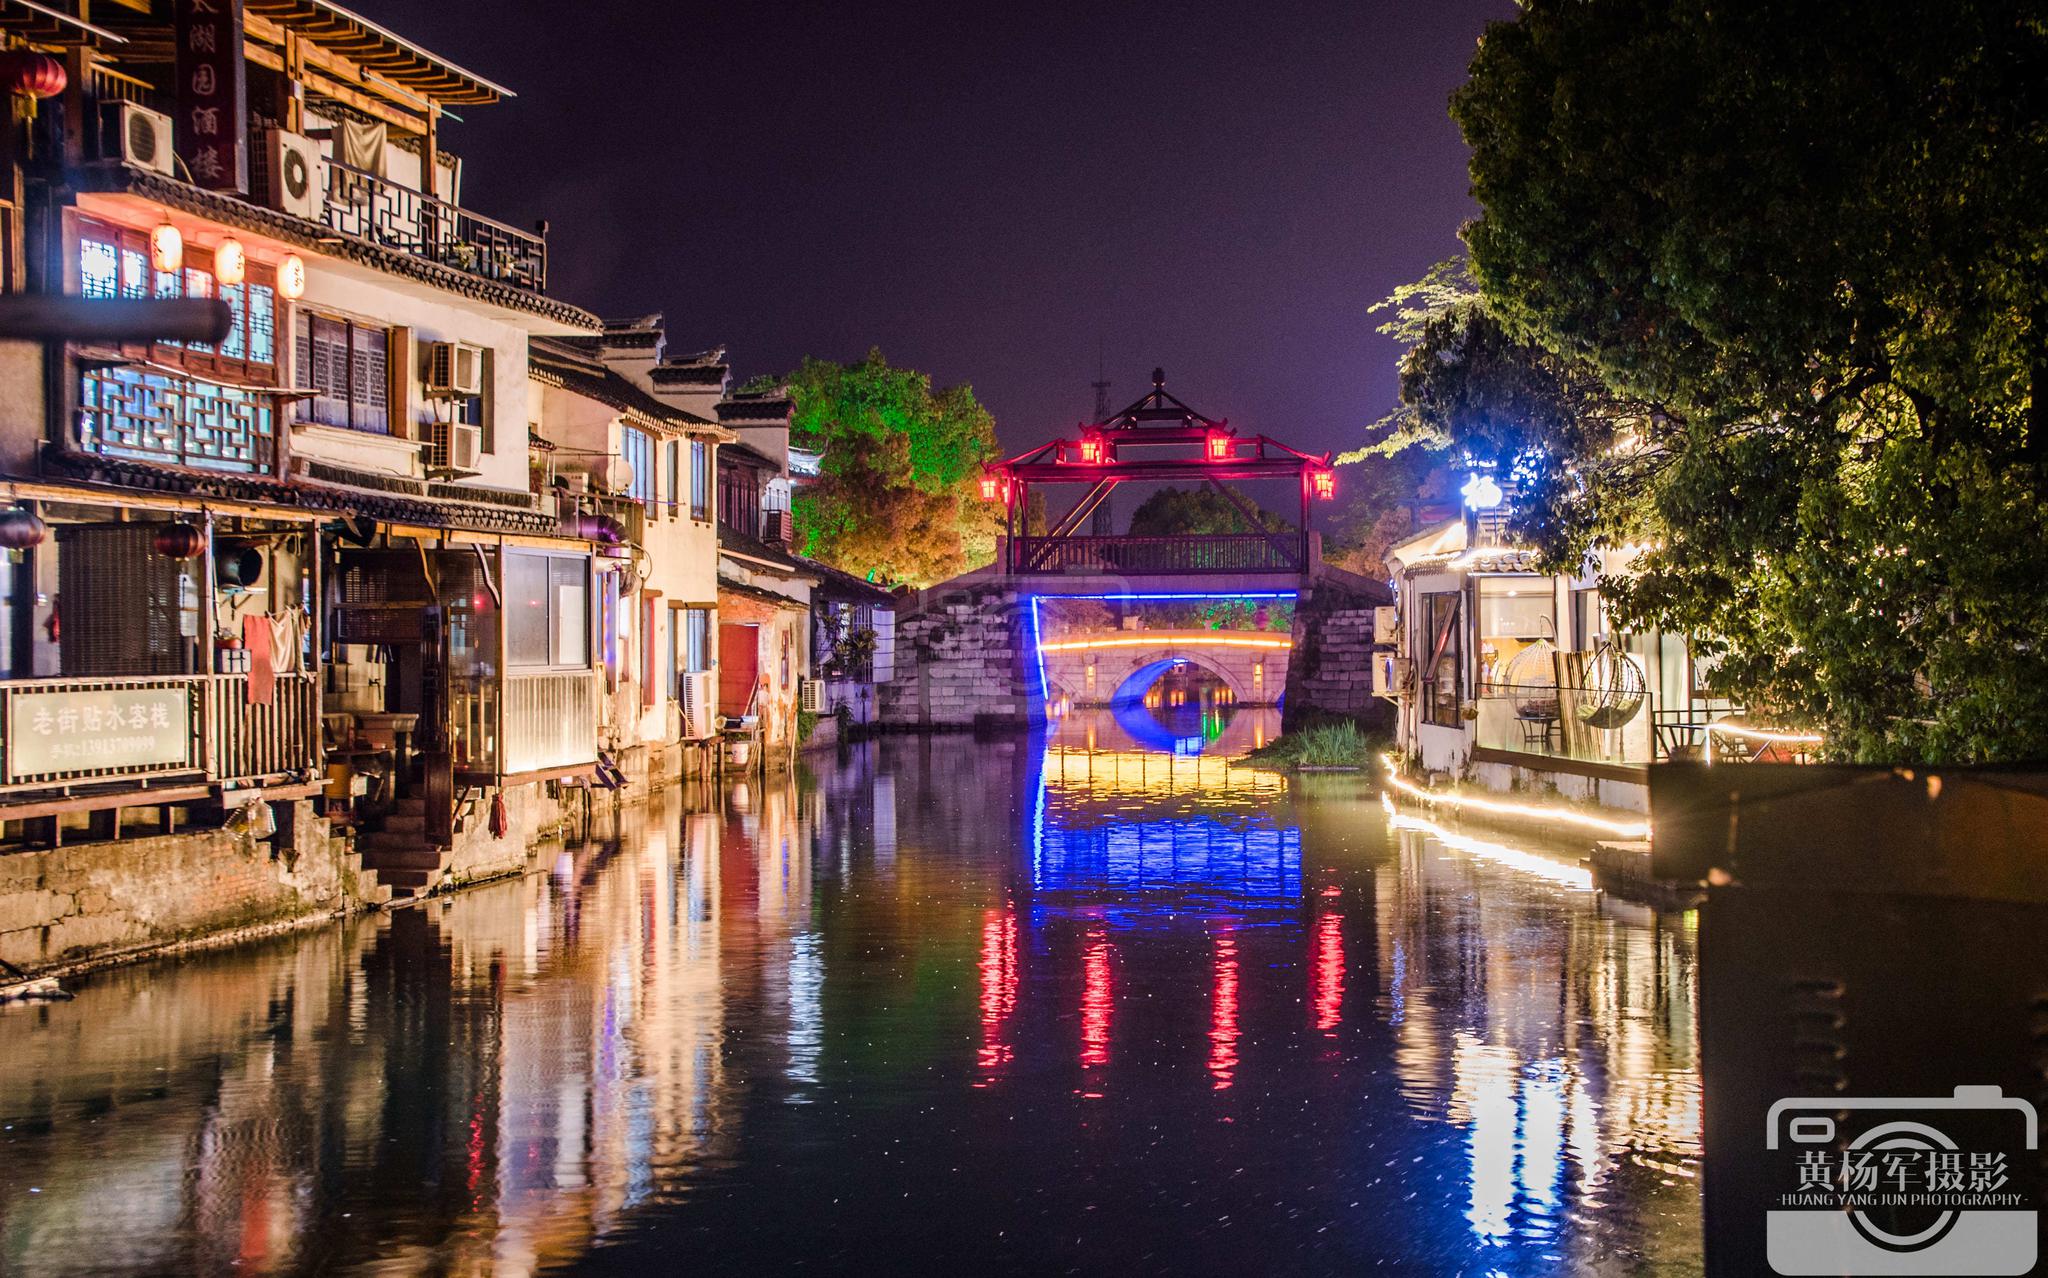 吴江区同里古镇美丽的夜色,静谧的江南水乡,古老的石拱桥